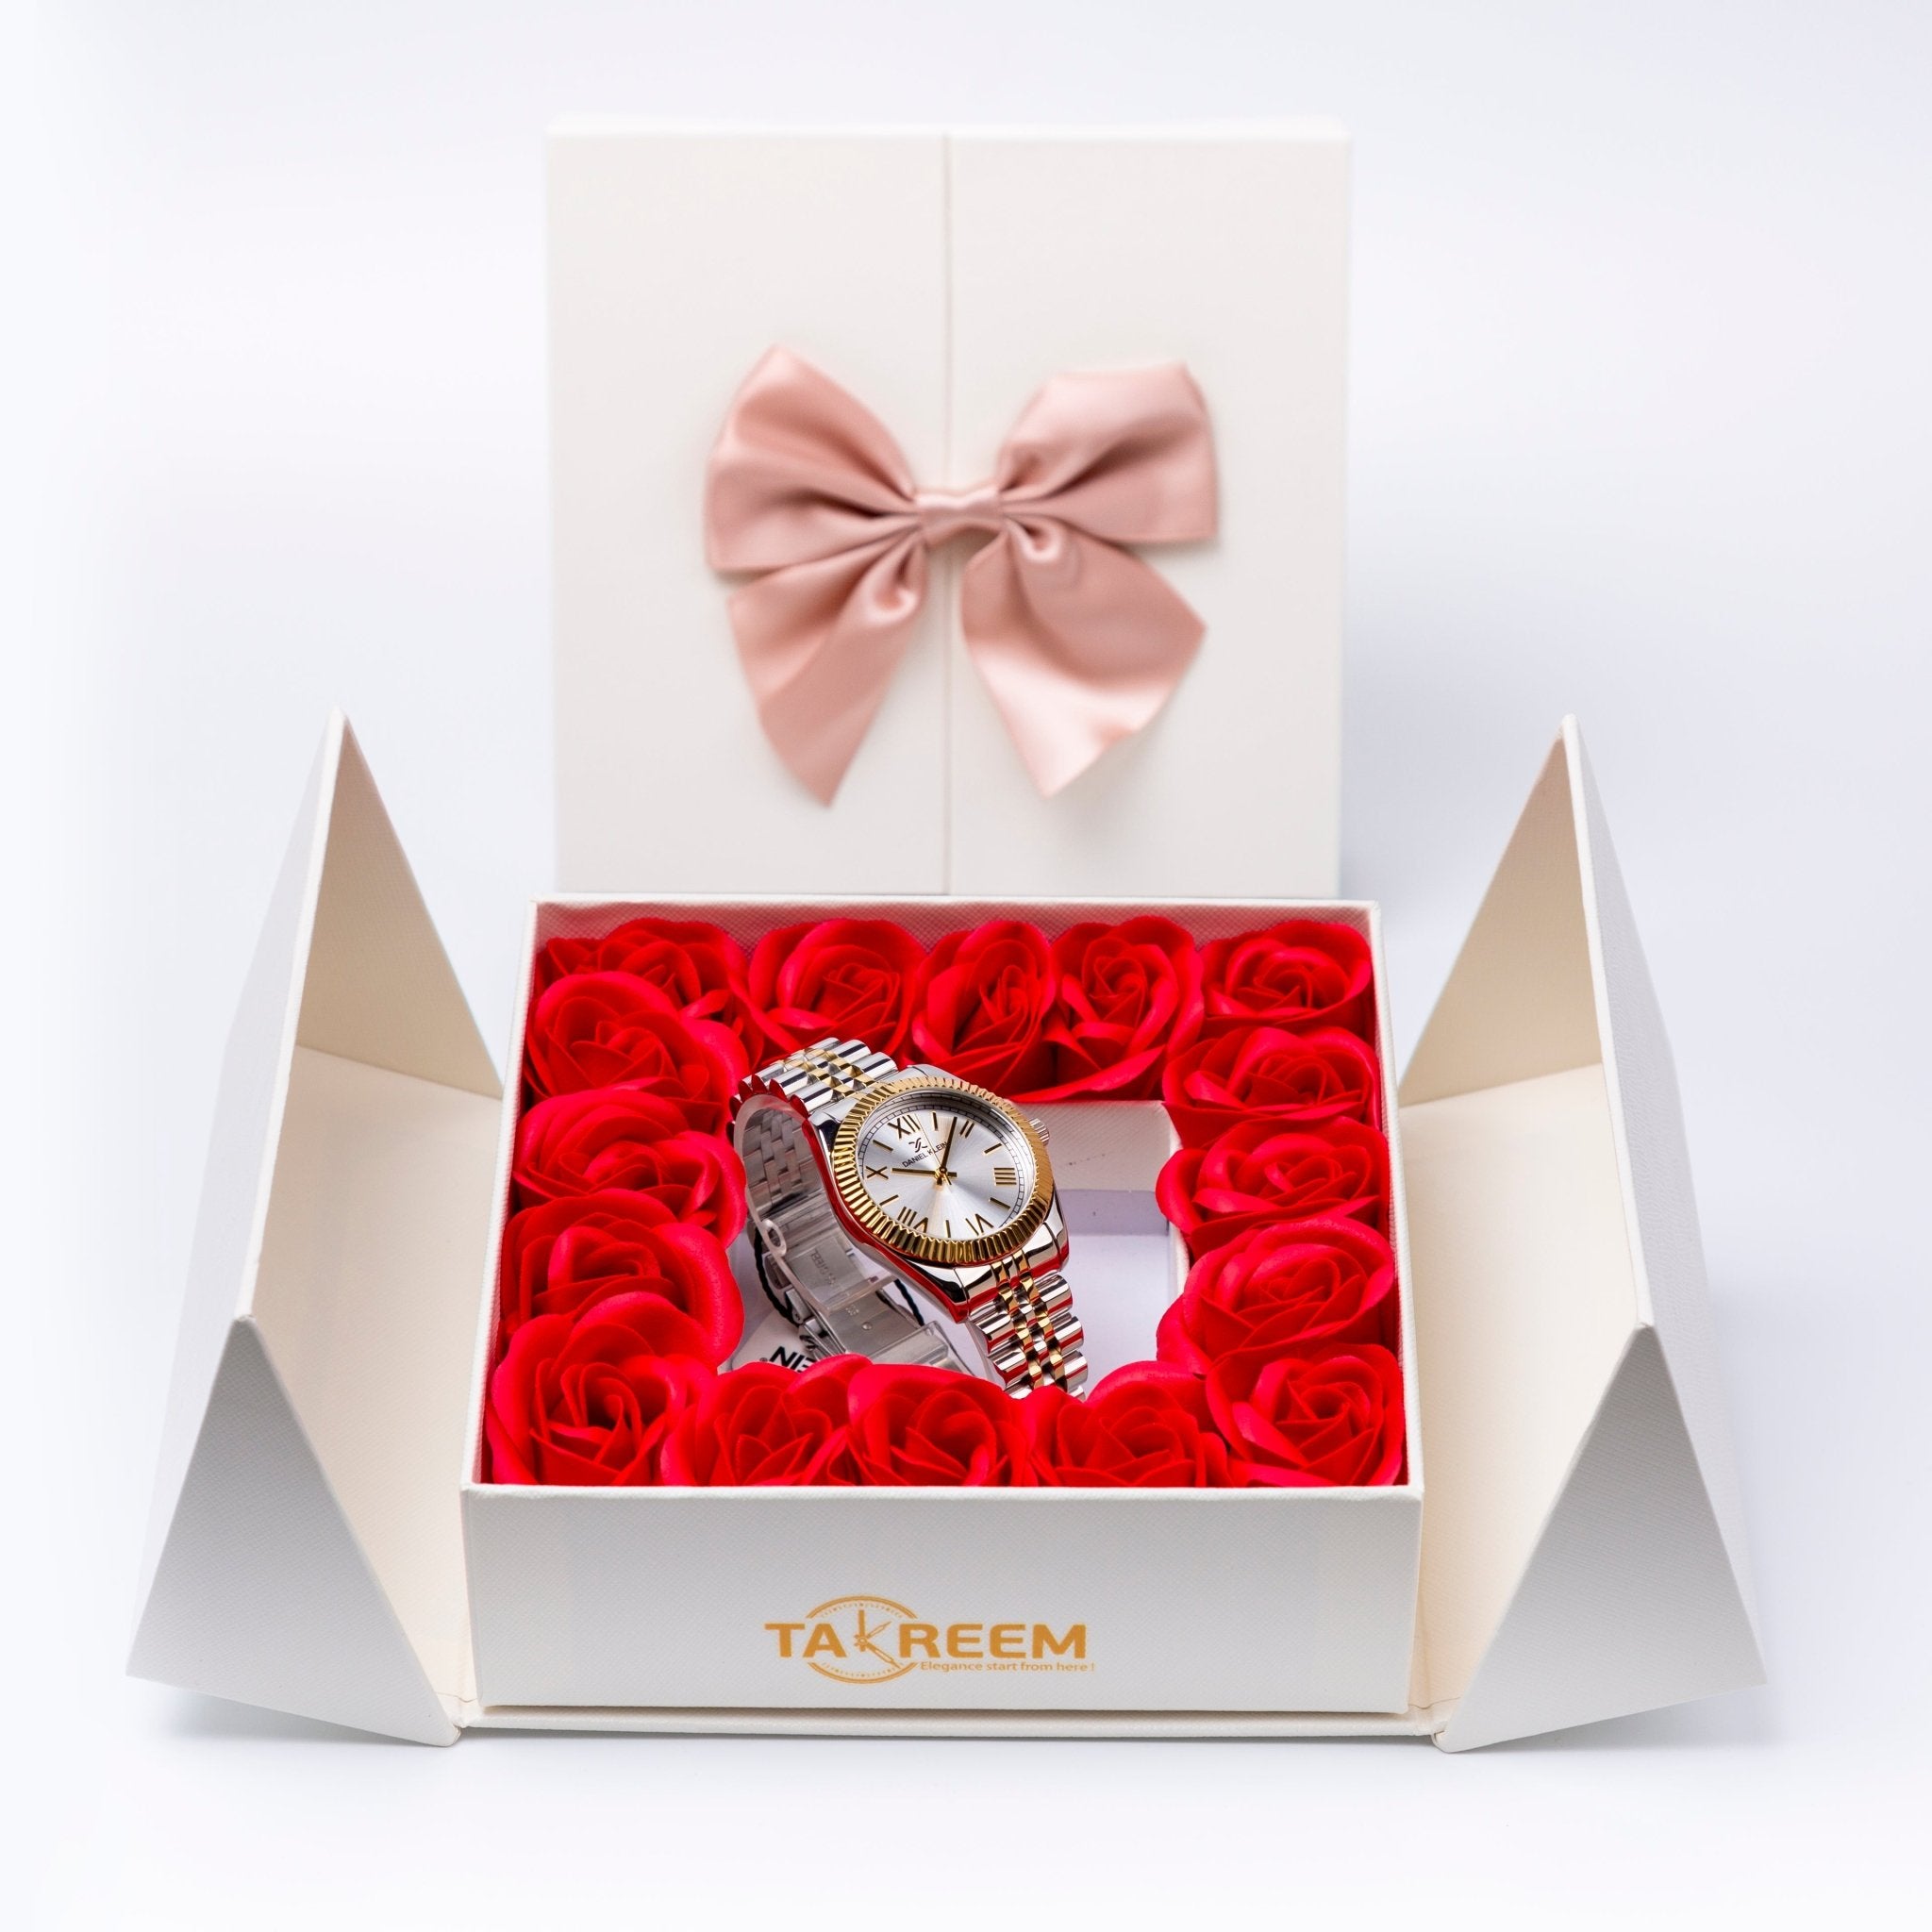 Flower Box - Gift For Women 6 - #shoFlower Box - Gift For Women 6p_name#Flower Box - Gift For Women 6Gift Boxes & TinsTakreemTakreem.joWomenWatchFlower Box - Gift For Women 6 - Takreem.jo